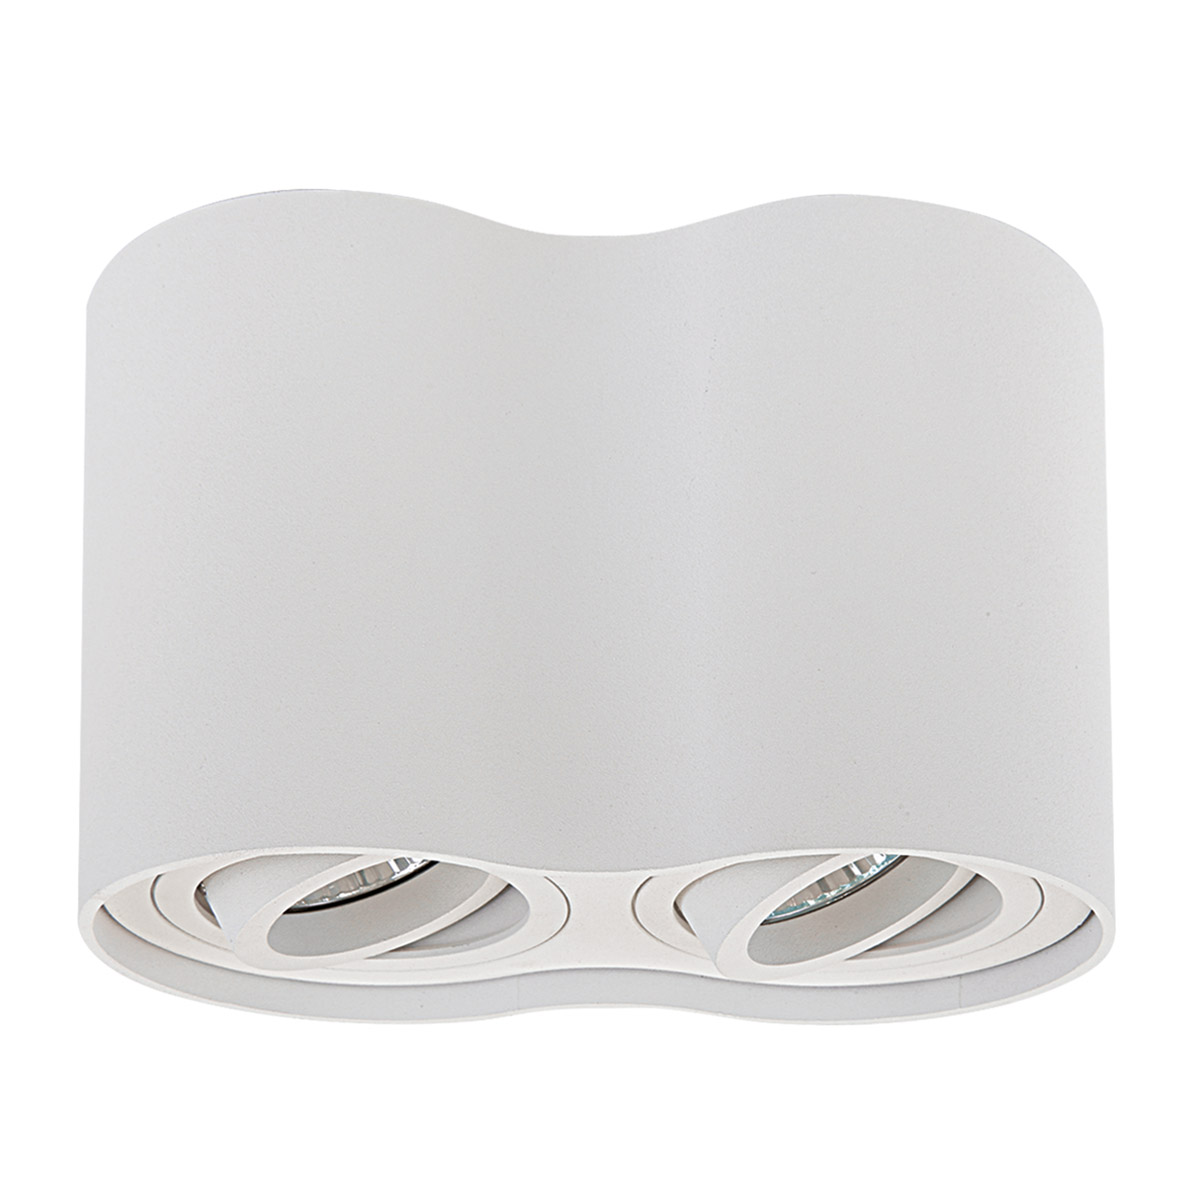 Светильник точечный накладной декоративный под заменяемые ГЛН или LED лампы Lightstar 052026 Binoco